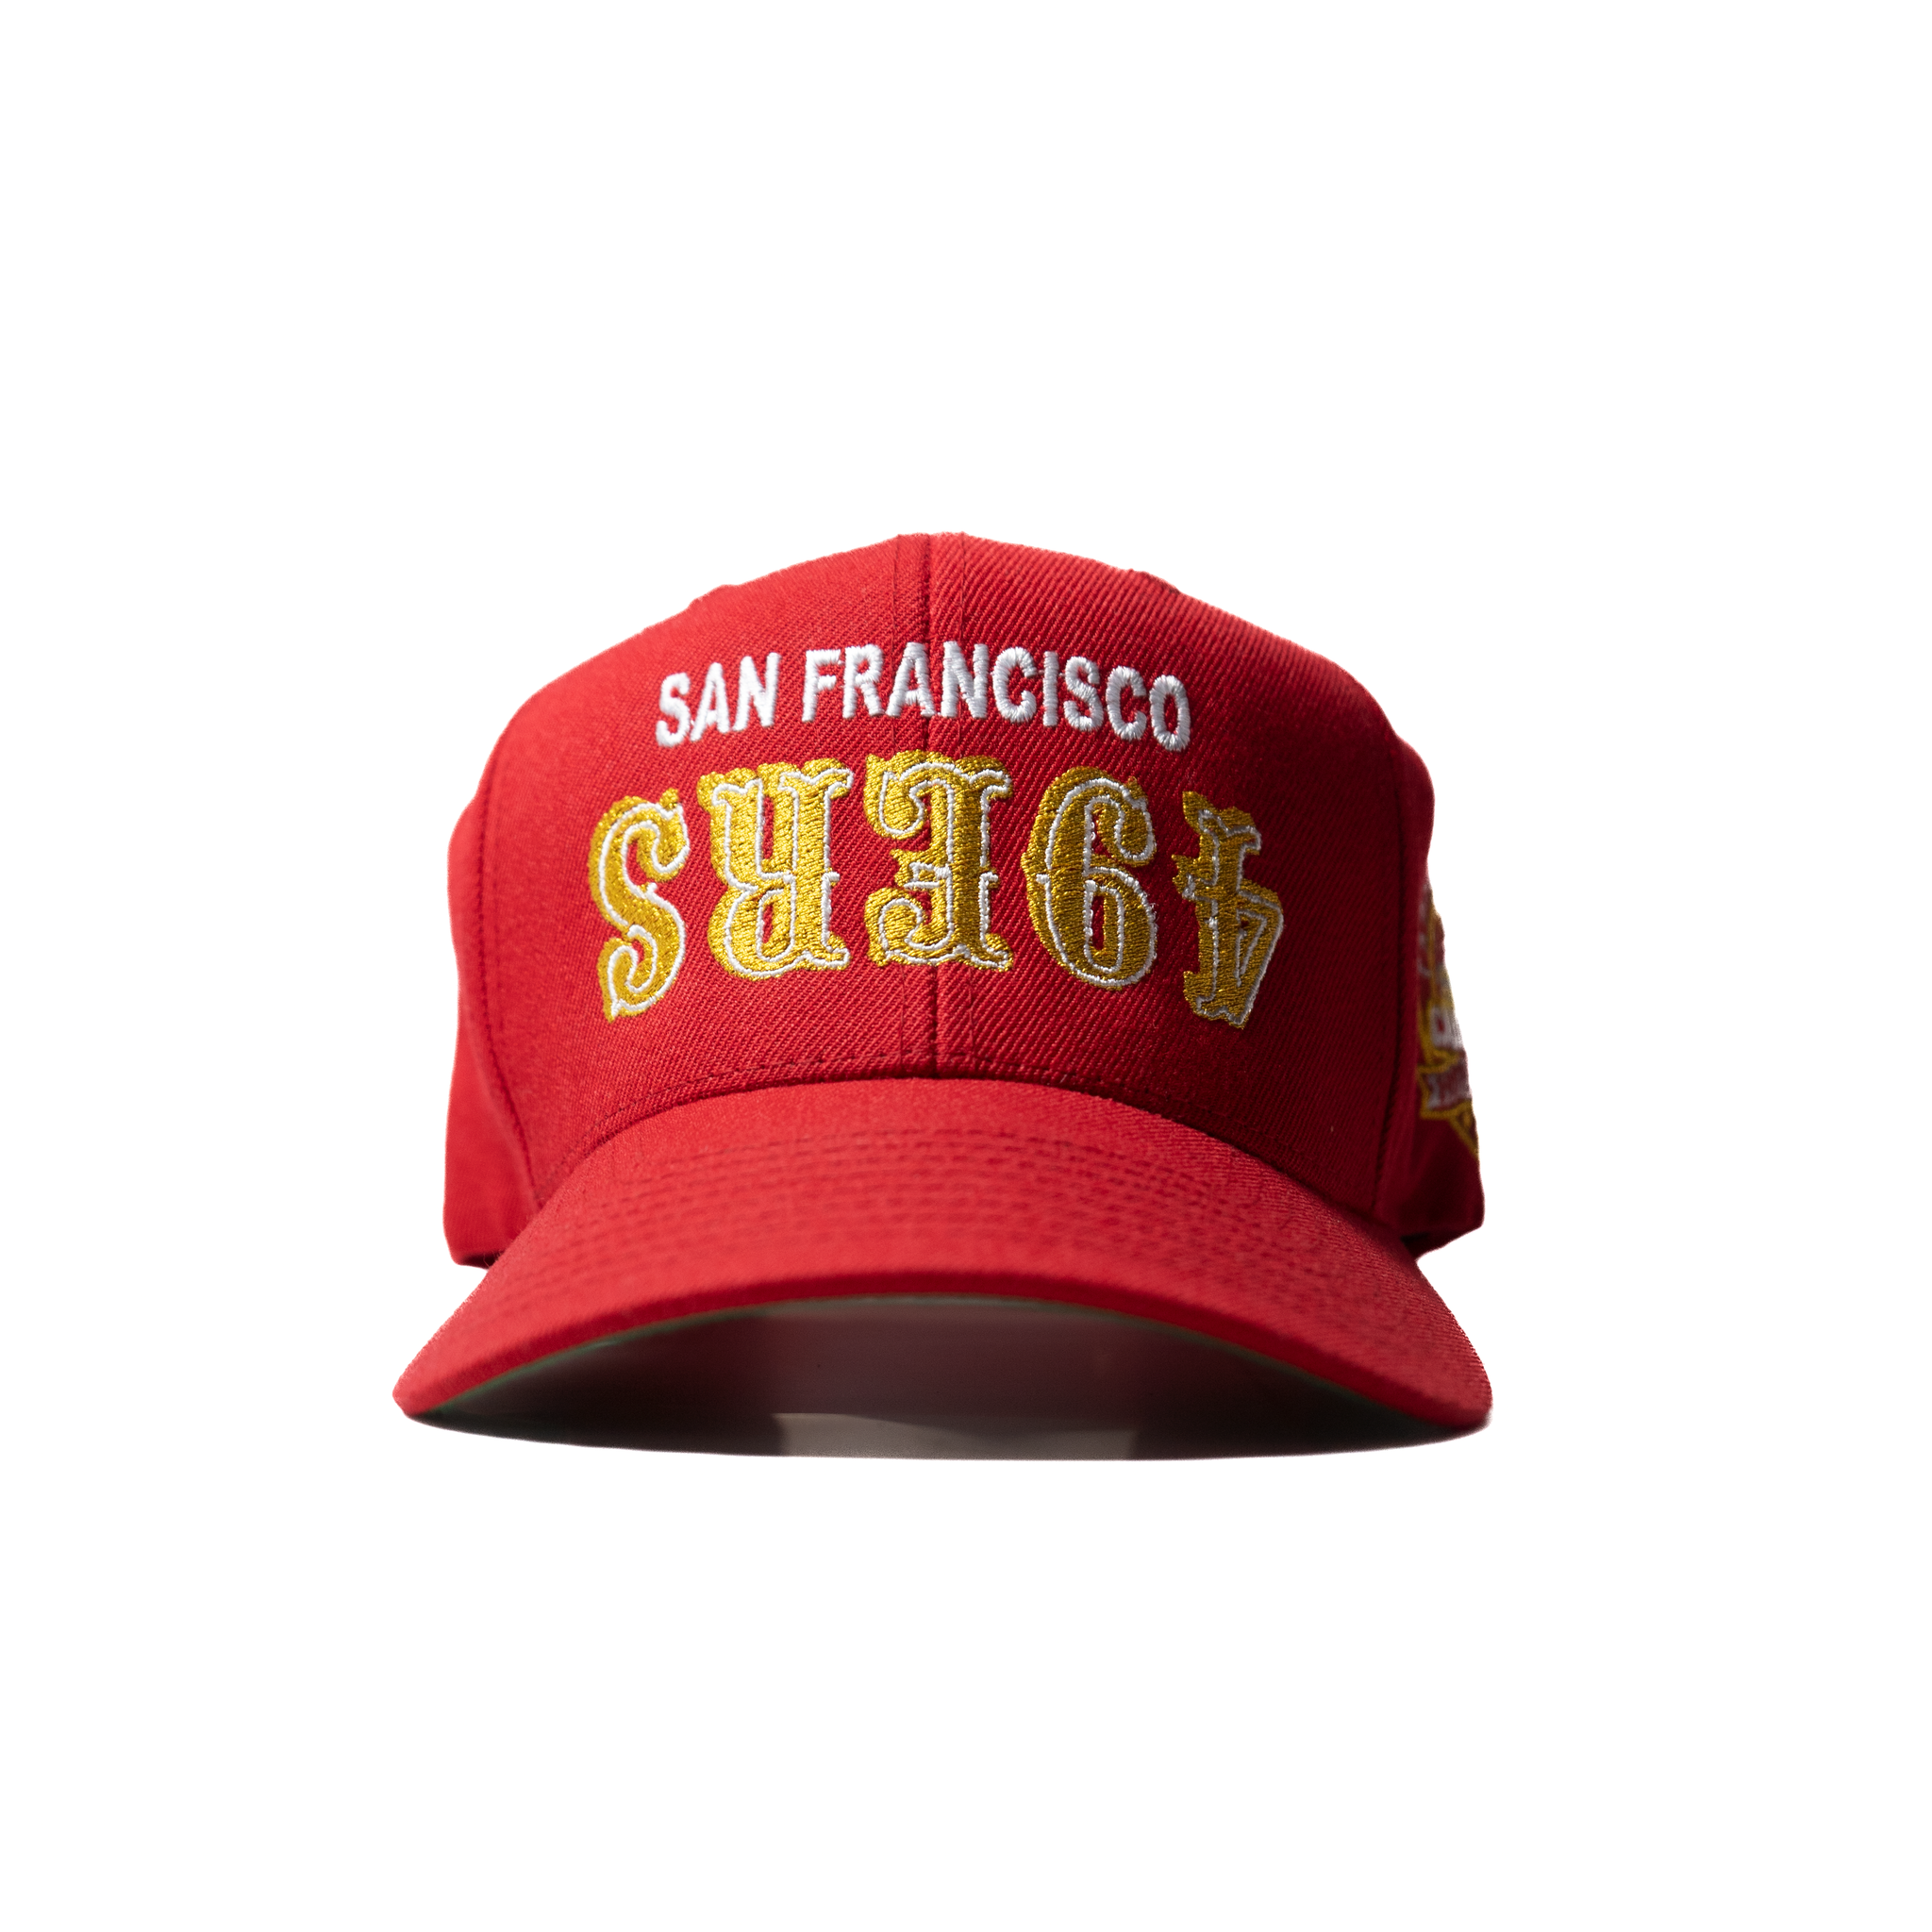 49ers retro hat